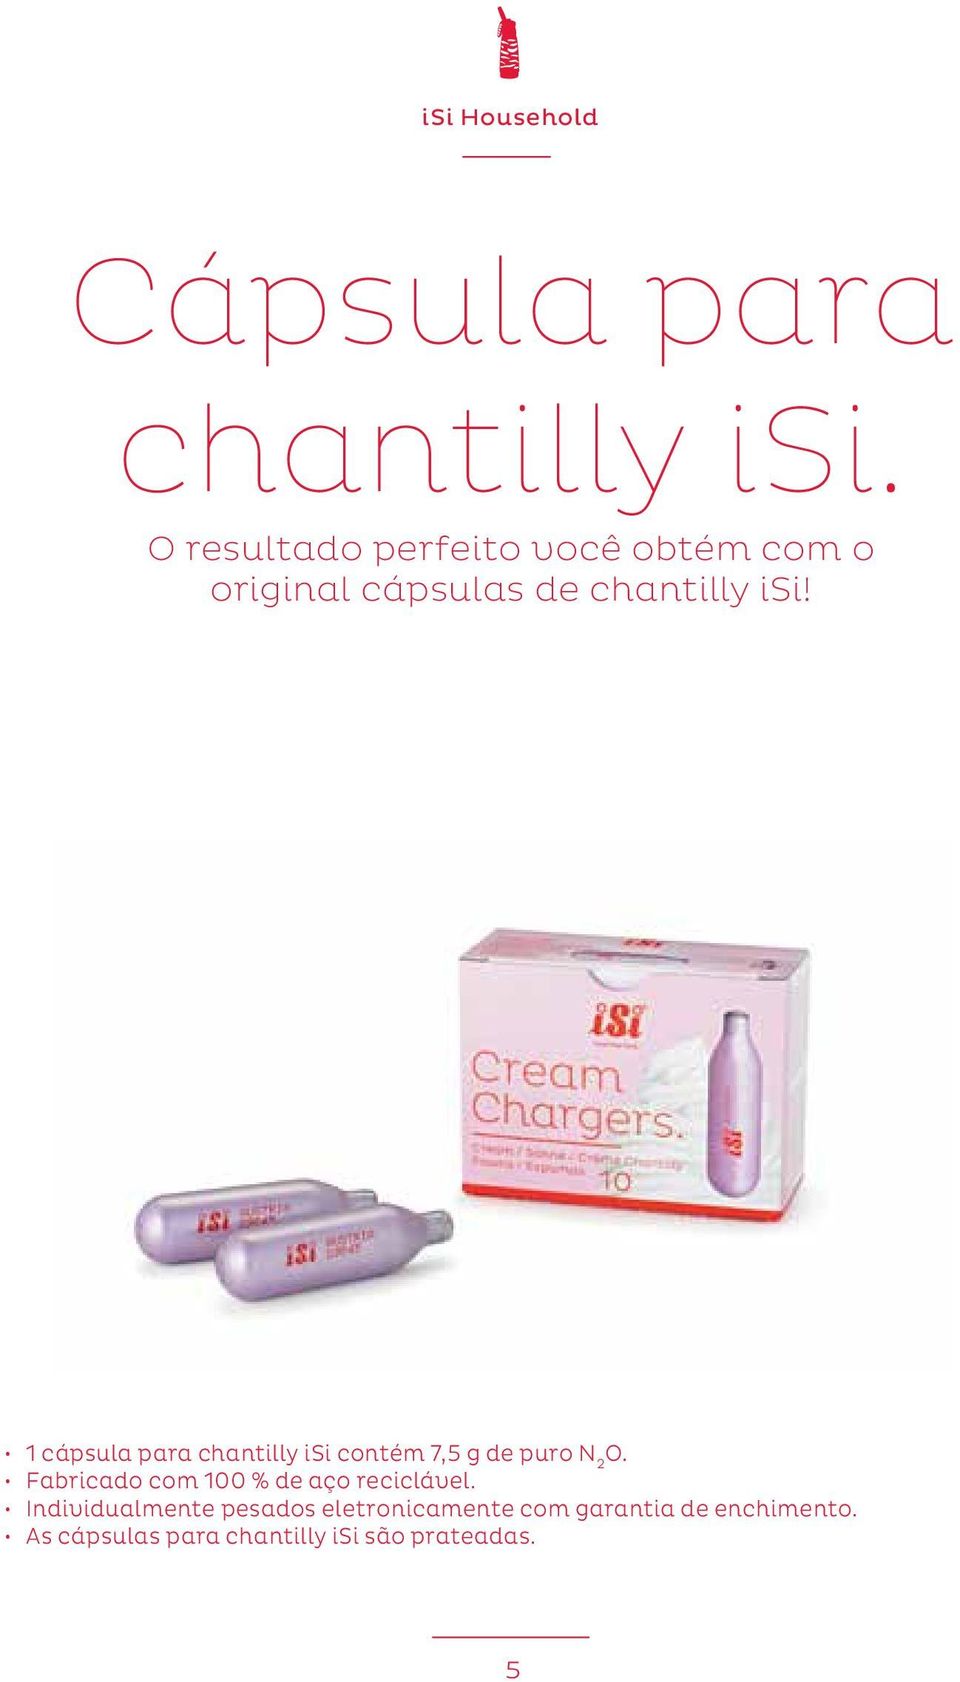 1 cápsula para chantilly isi contém 7,5 g de puro N 2 O.